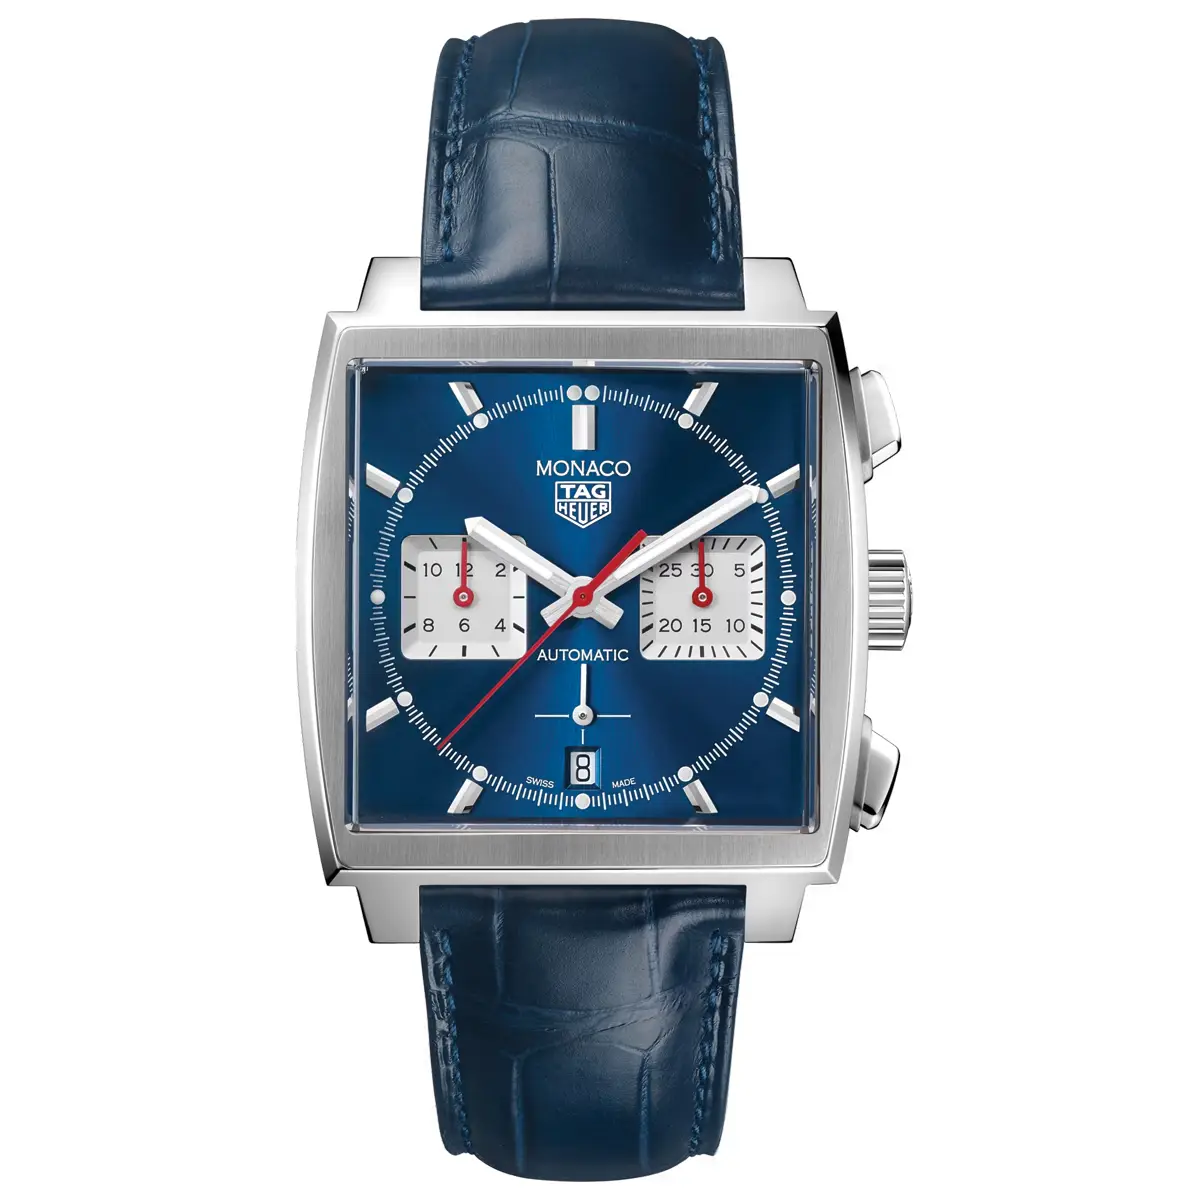 Đồng hồ Tag Heuer Monaco Chronograph CBL2111.FC6453 mặt số màu xanh. Dây đeo bằng da. Thân vỏ bằng thép.